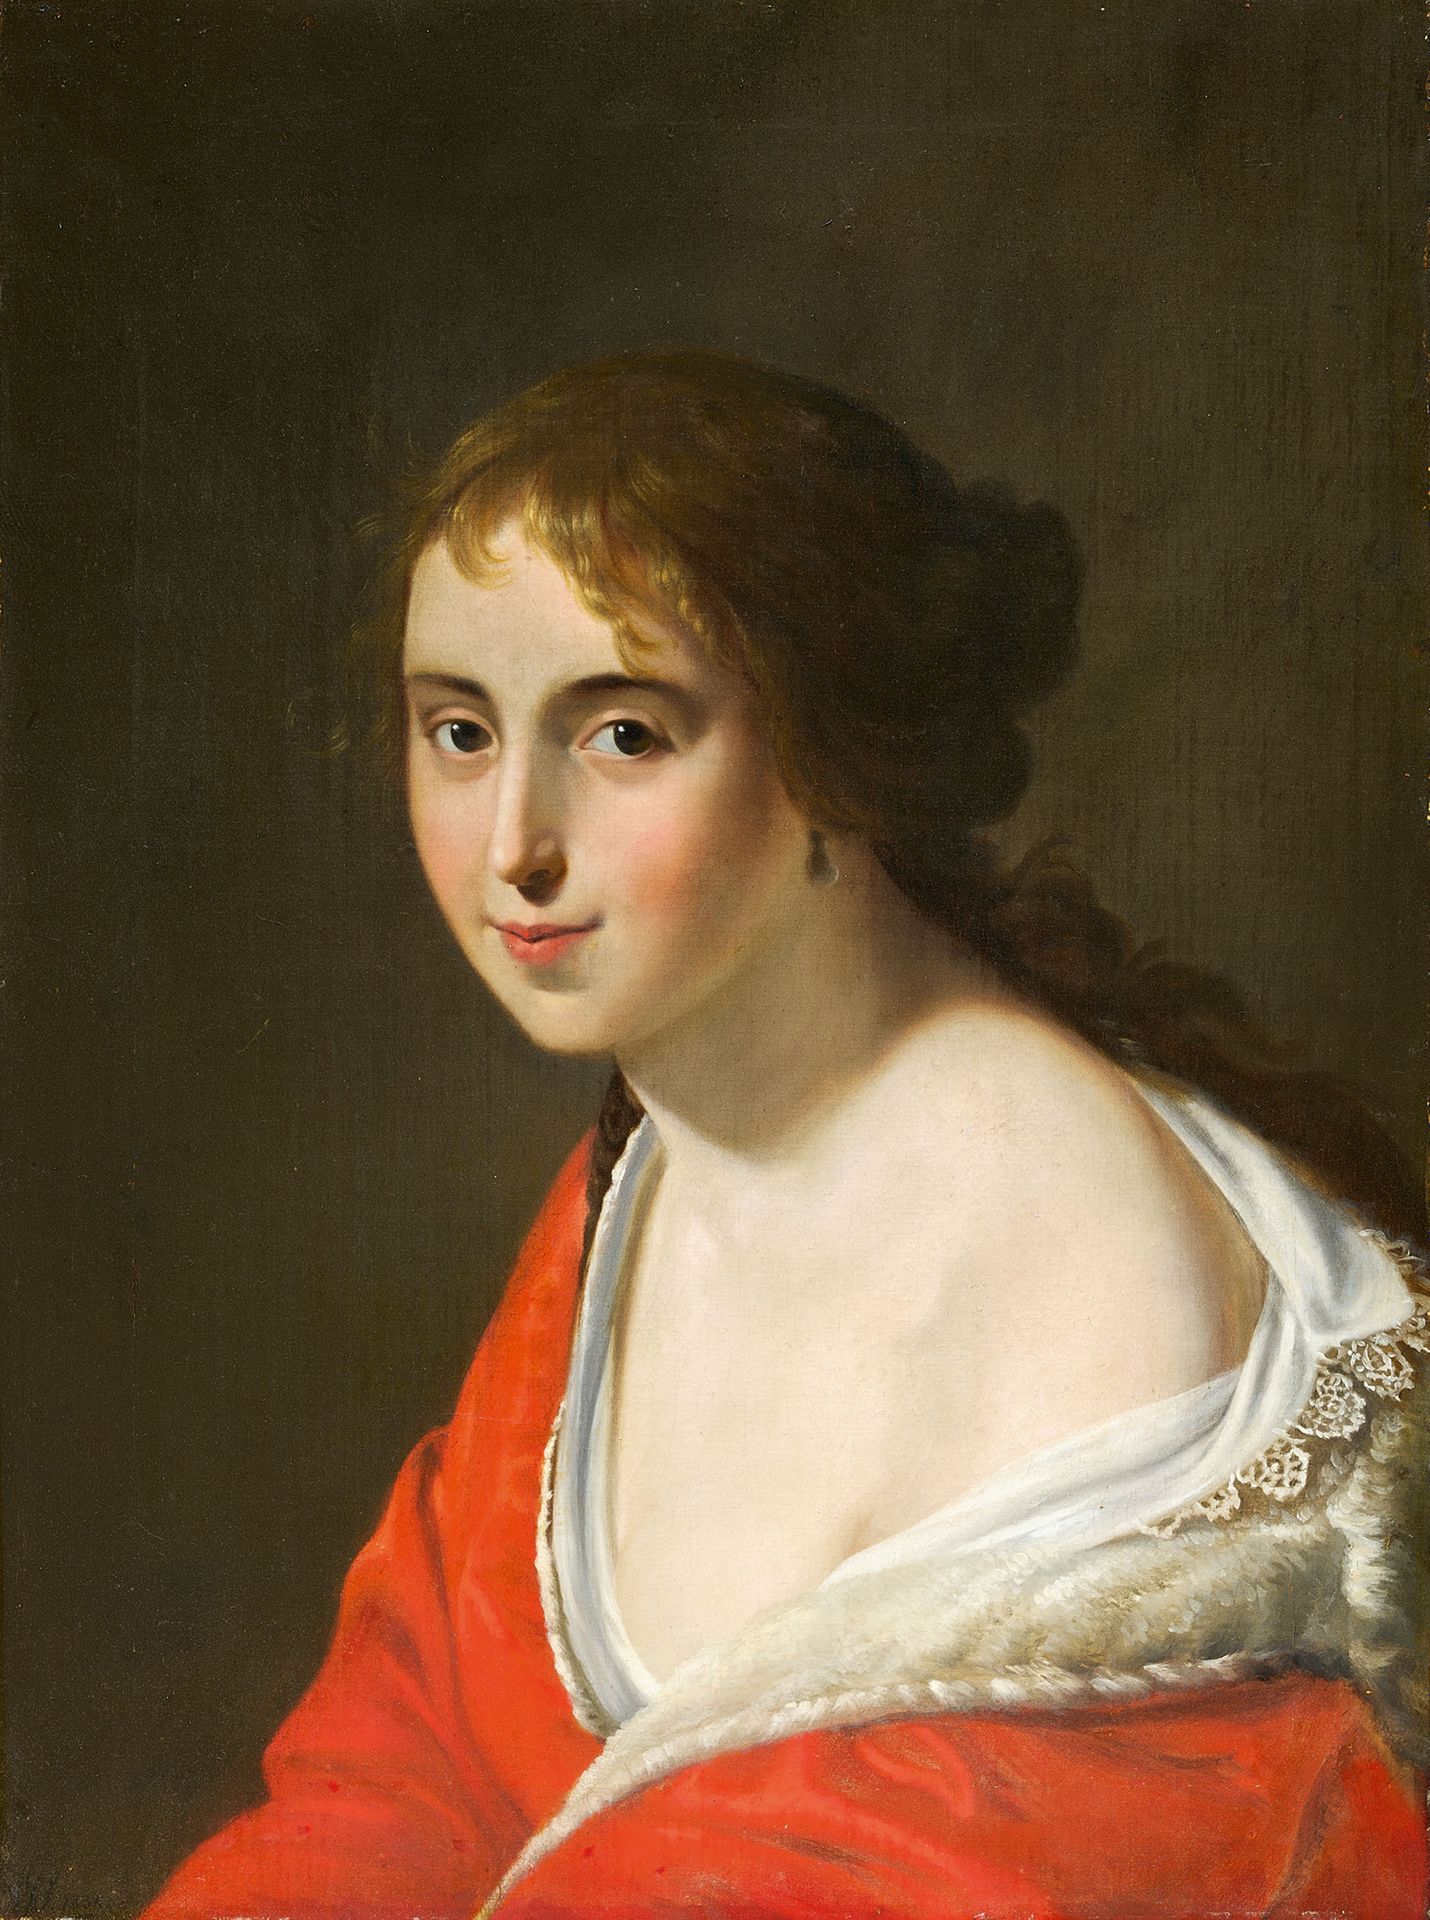 ÉCOLE FRANÇAISE DU DÉBUT DU XIXe SIÈCLE Portrait of a Woman wearing a Red Dress
&hellip;